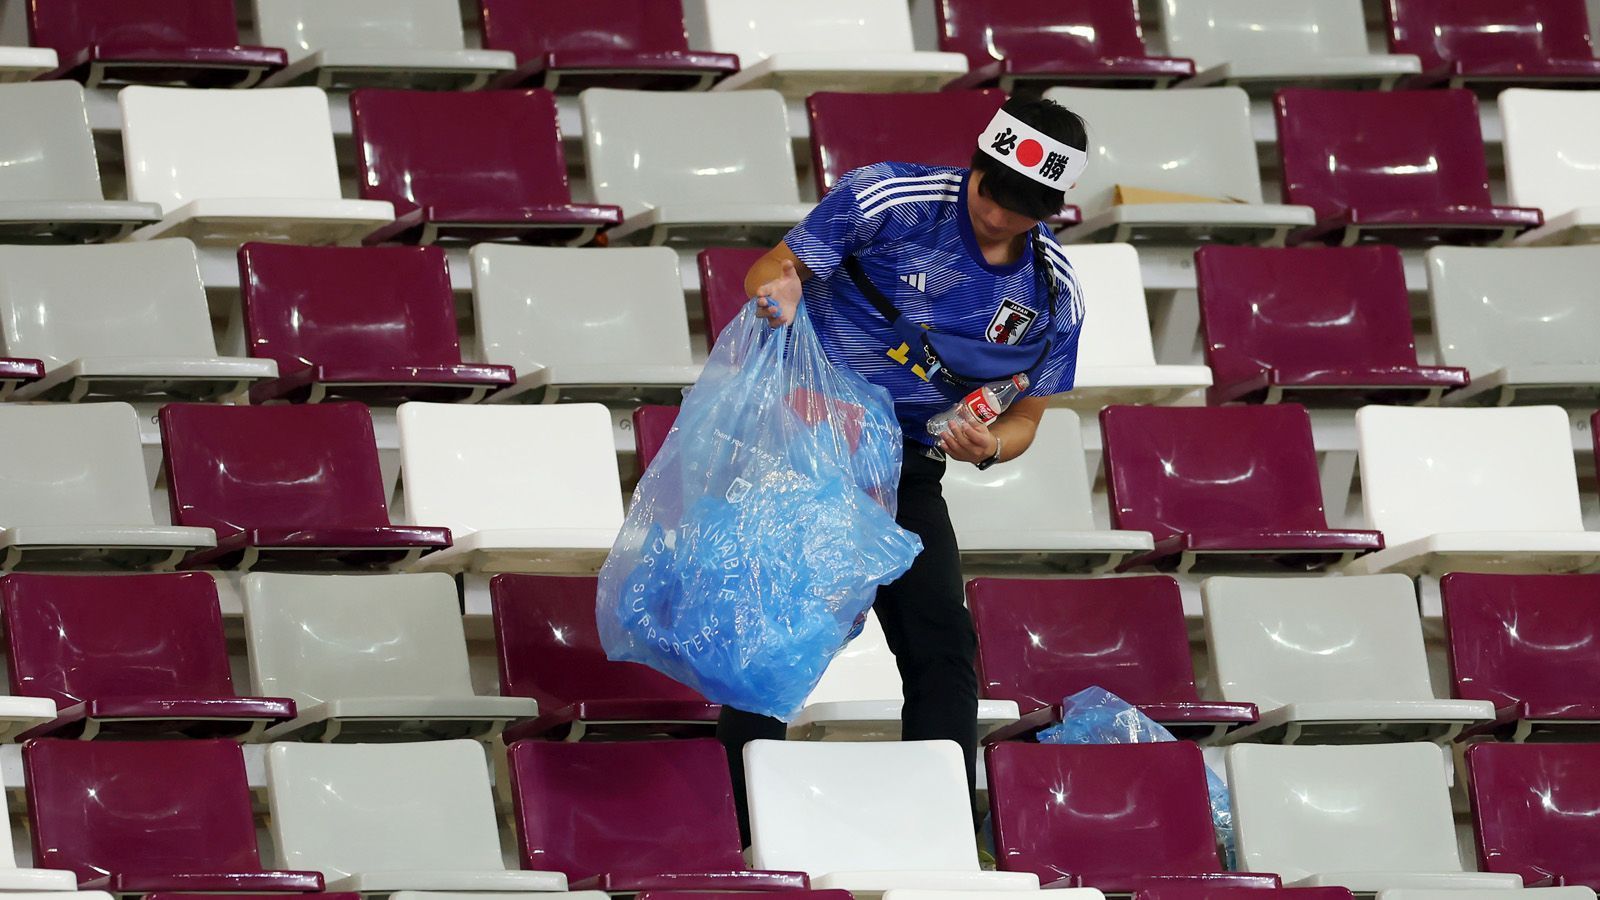 
                <strong>Japans Fans räumen die Stadien auf</strong><br>
                Die japanischen Fans sorgen auf den Tribünen der katarischen Stadien mal wieder für einige der schönsten Bilder dieser WM. Bereits nach dem Auftaktspiel zwischen Gastgeber Katar und Ecuador räumten sie nach der Partie die Ränge auf und sammelten den Müll ein. Selbiges taten die Fans auch nach dem Spiel der eigenen Nationalmannschaft gegen Deutschland im Khalifa International Stadium. "Wir Japaner hinterlassen nie Müll, wir respektieren diesen Platz", sagte ein Fan in einem Video, das seinen Weg auf Twitter fand
              